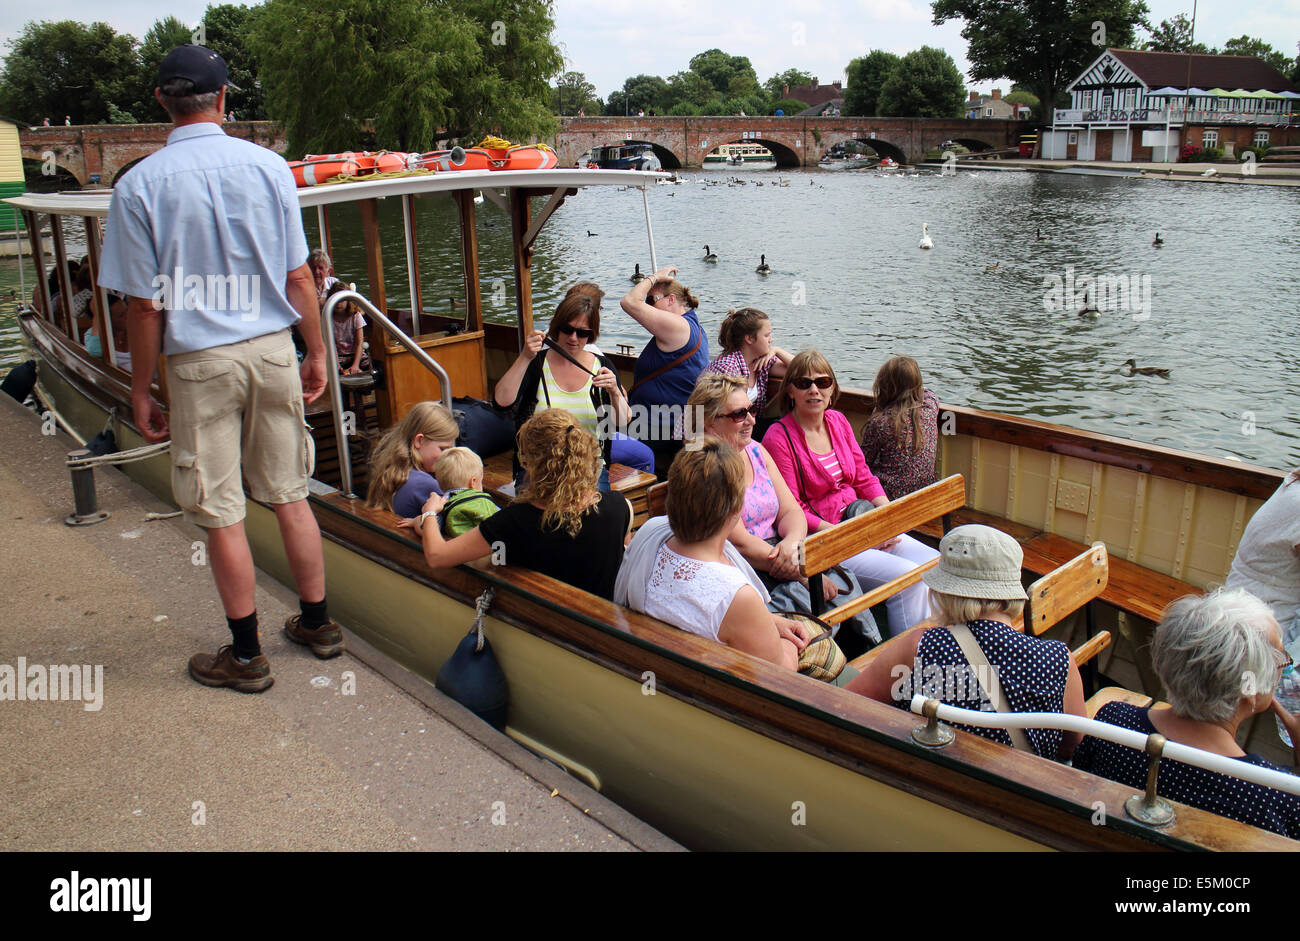 Menschen auf einem Fluss Avon Reise Boot, London, UK Stockfoto